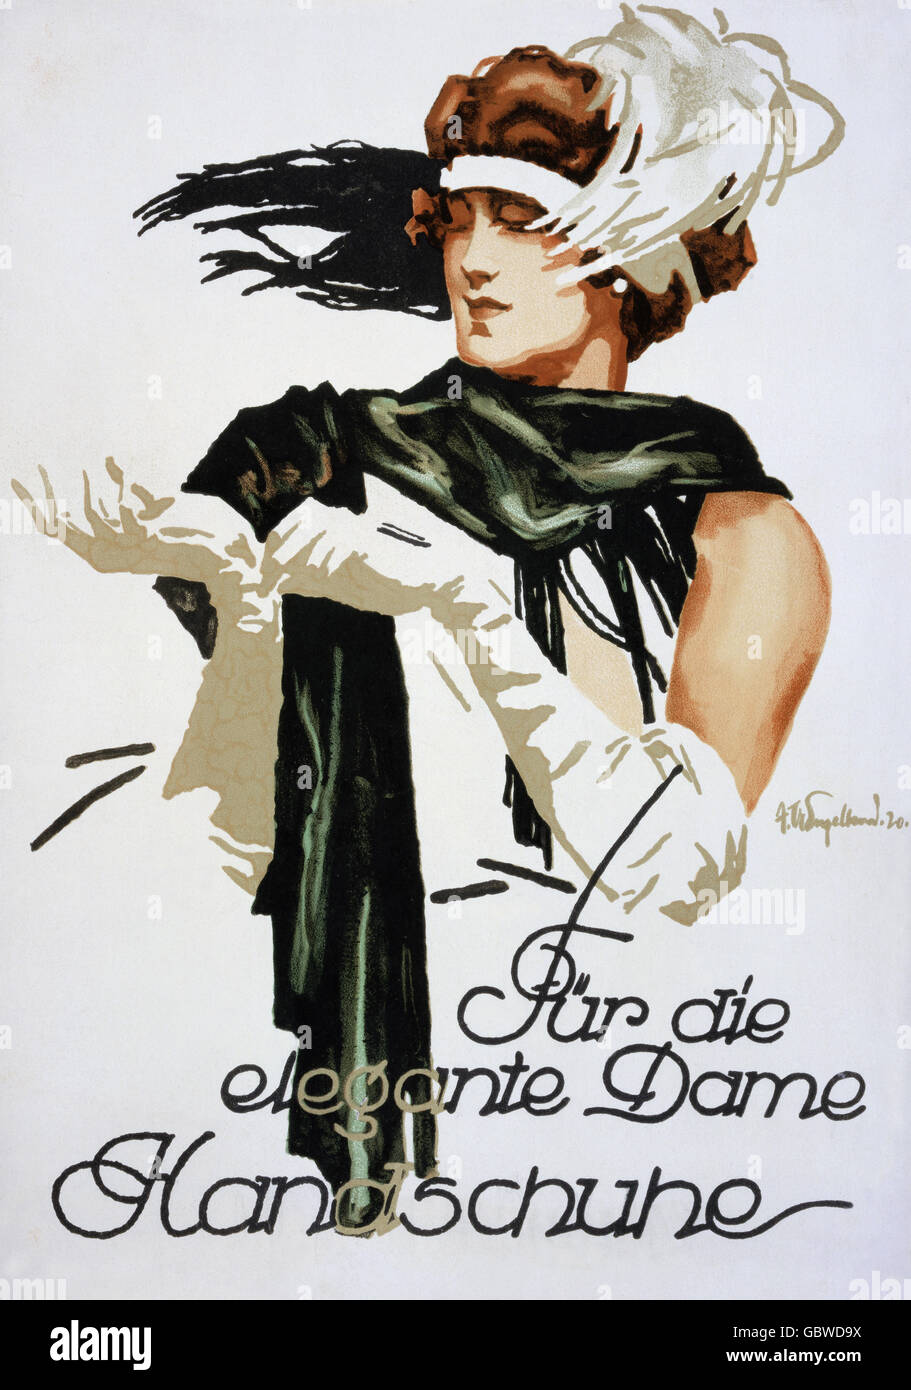 Werbung, Mode, 'Handschuhe für die elegante Dame', Poster von Julius Ussy Engelhard, 1920, Additional-Rights-Clearences-not available Stockfoto